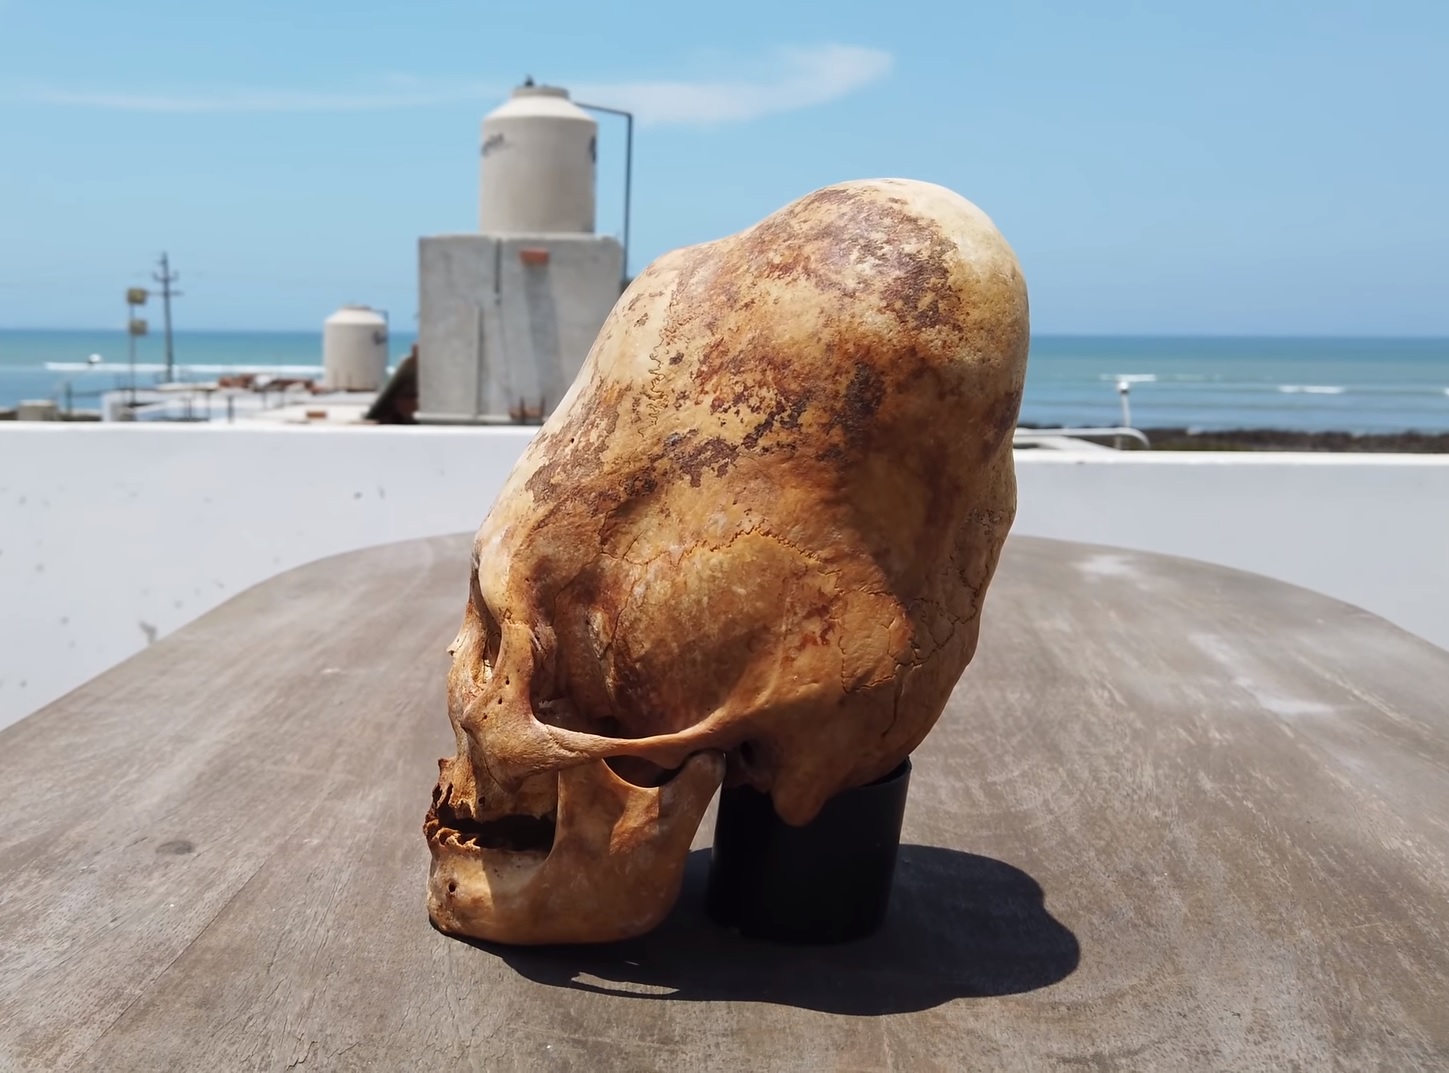 На кавказе раскопали скелет с удлинённым черепом, возрастом 1500 лет.